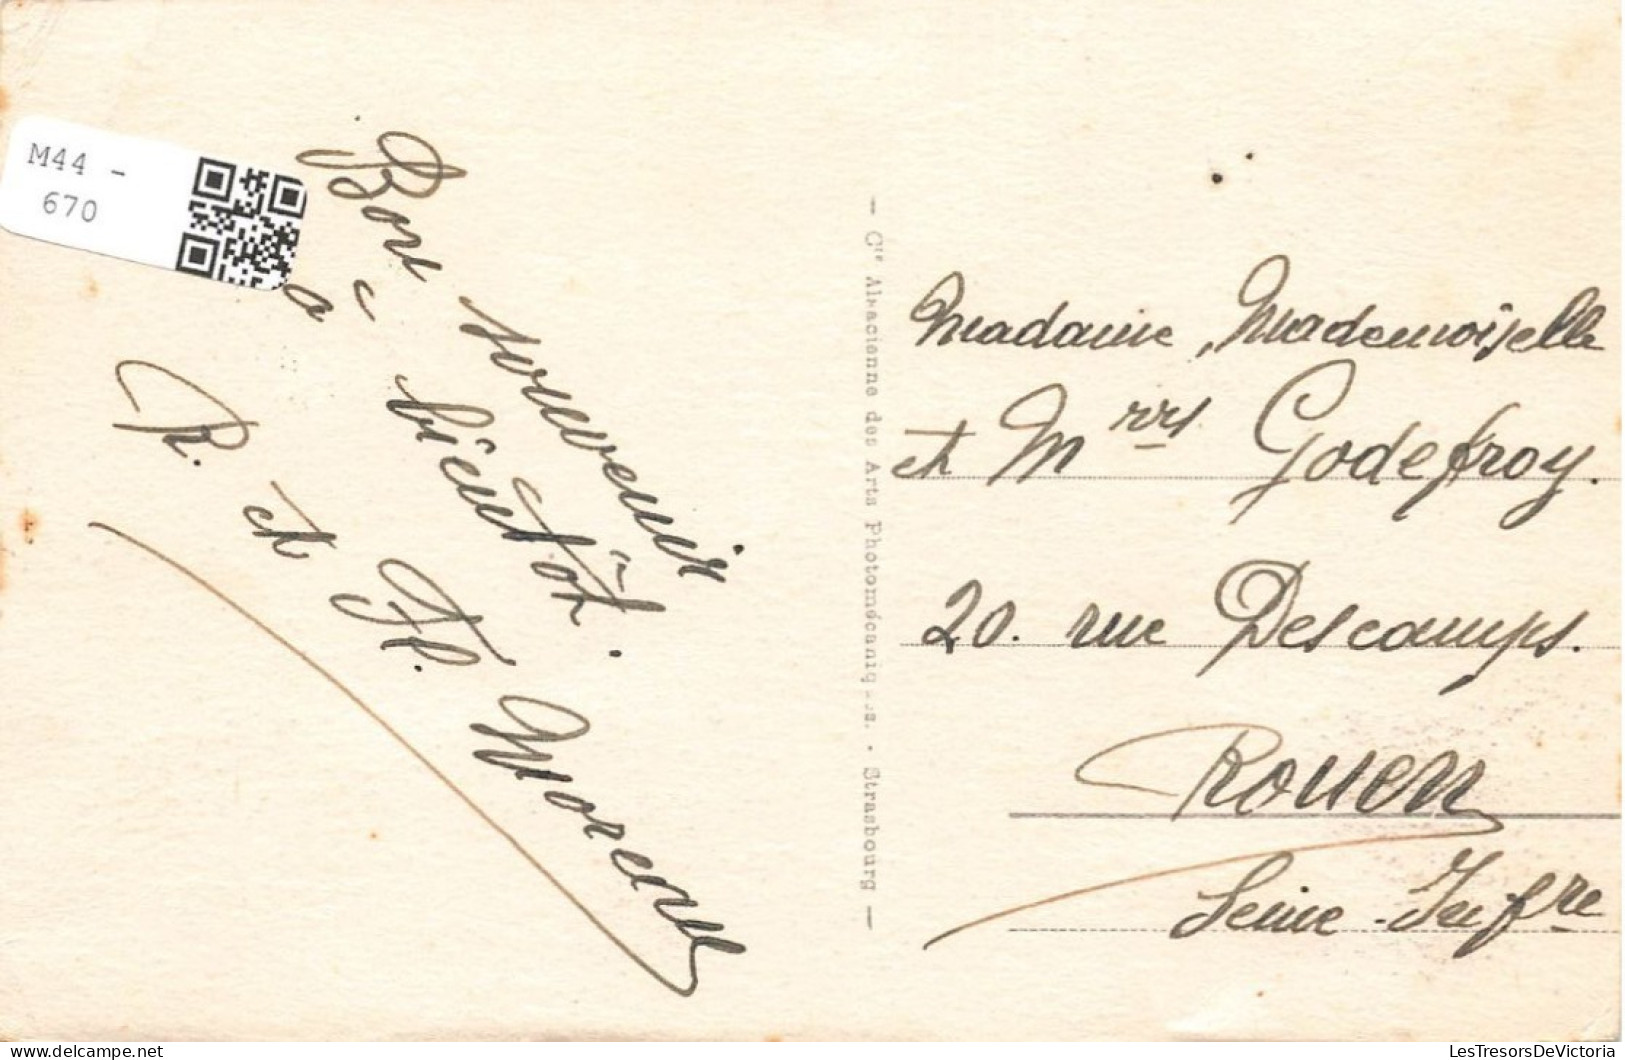 FRANCE - Fouras - Vue Sur Les Rochers Près De Sémaphore - Vue Générale Sur Les Rochers -  Carte Postale Ancienne - Fouras-les-Bains